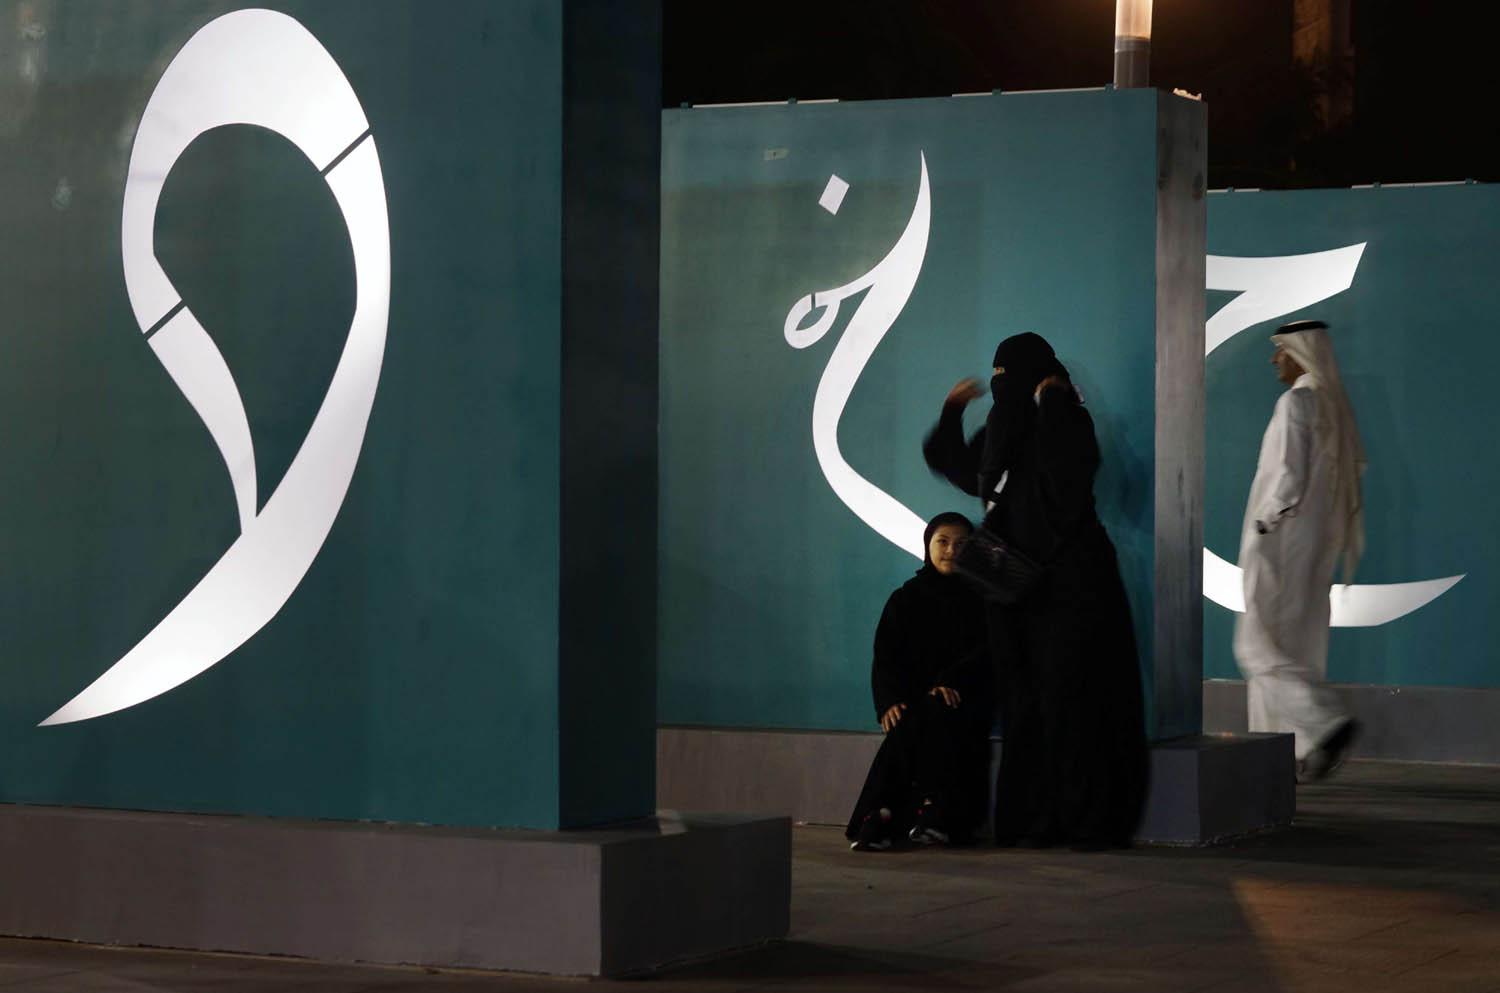 سعوديات يسترحن من جولة في معرض ثقافي في الرياض